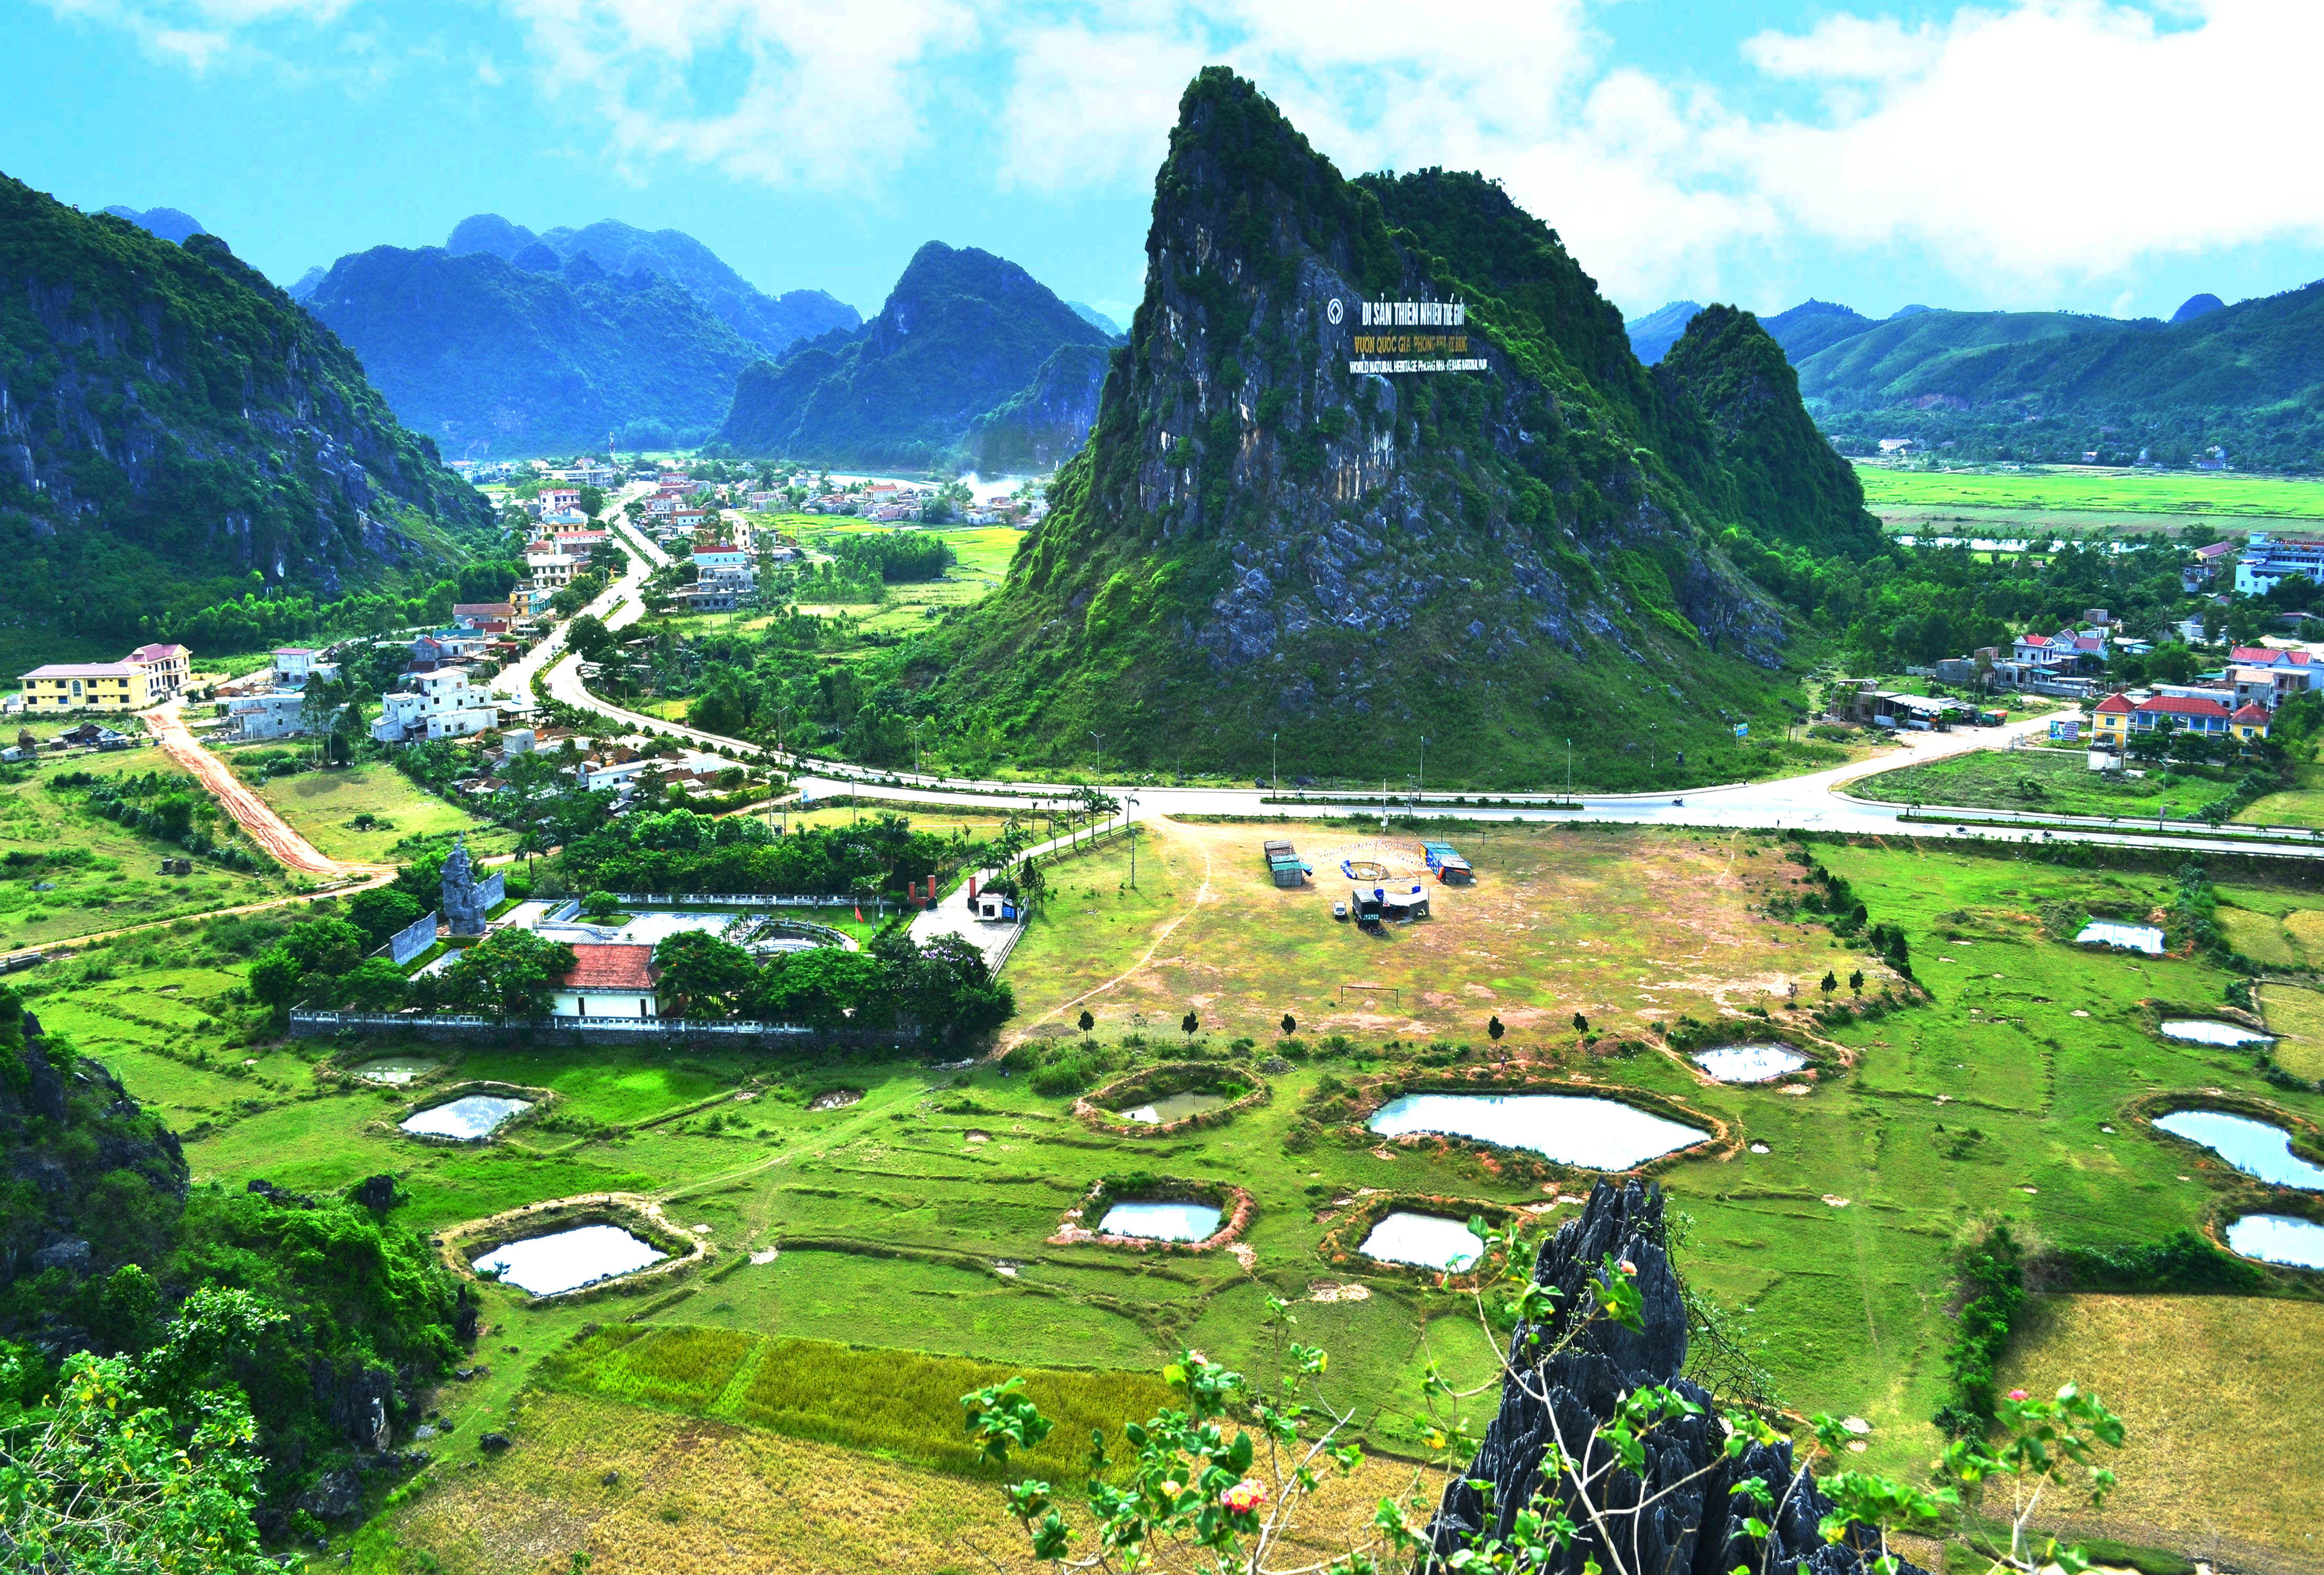 Du lịch cộng đồng - Hướng phát triển bền vững của Quảng Bình | Tạp chí du  lịch